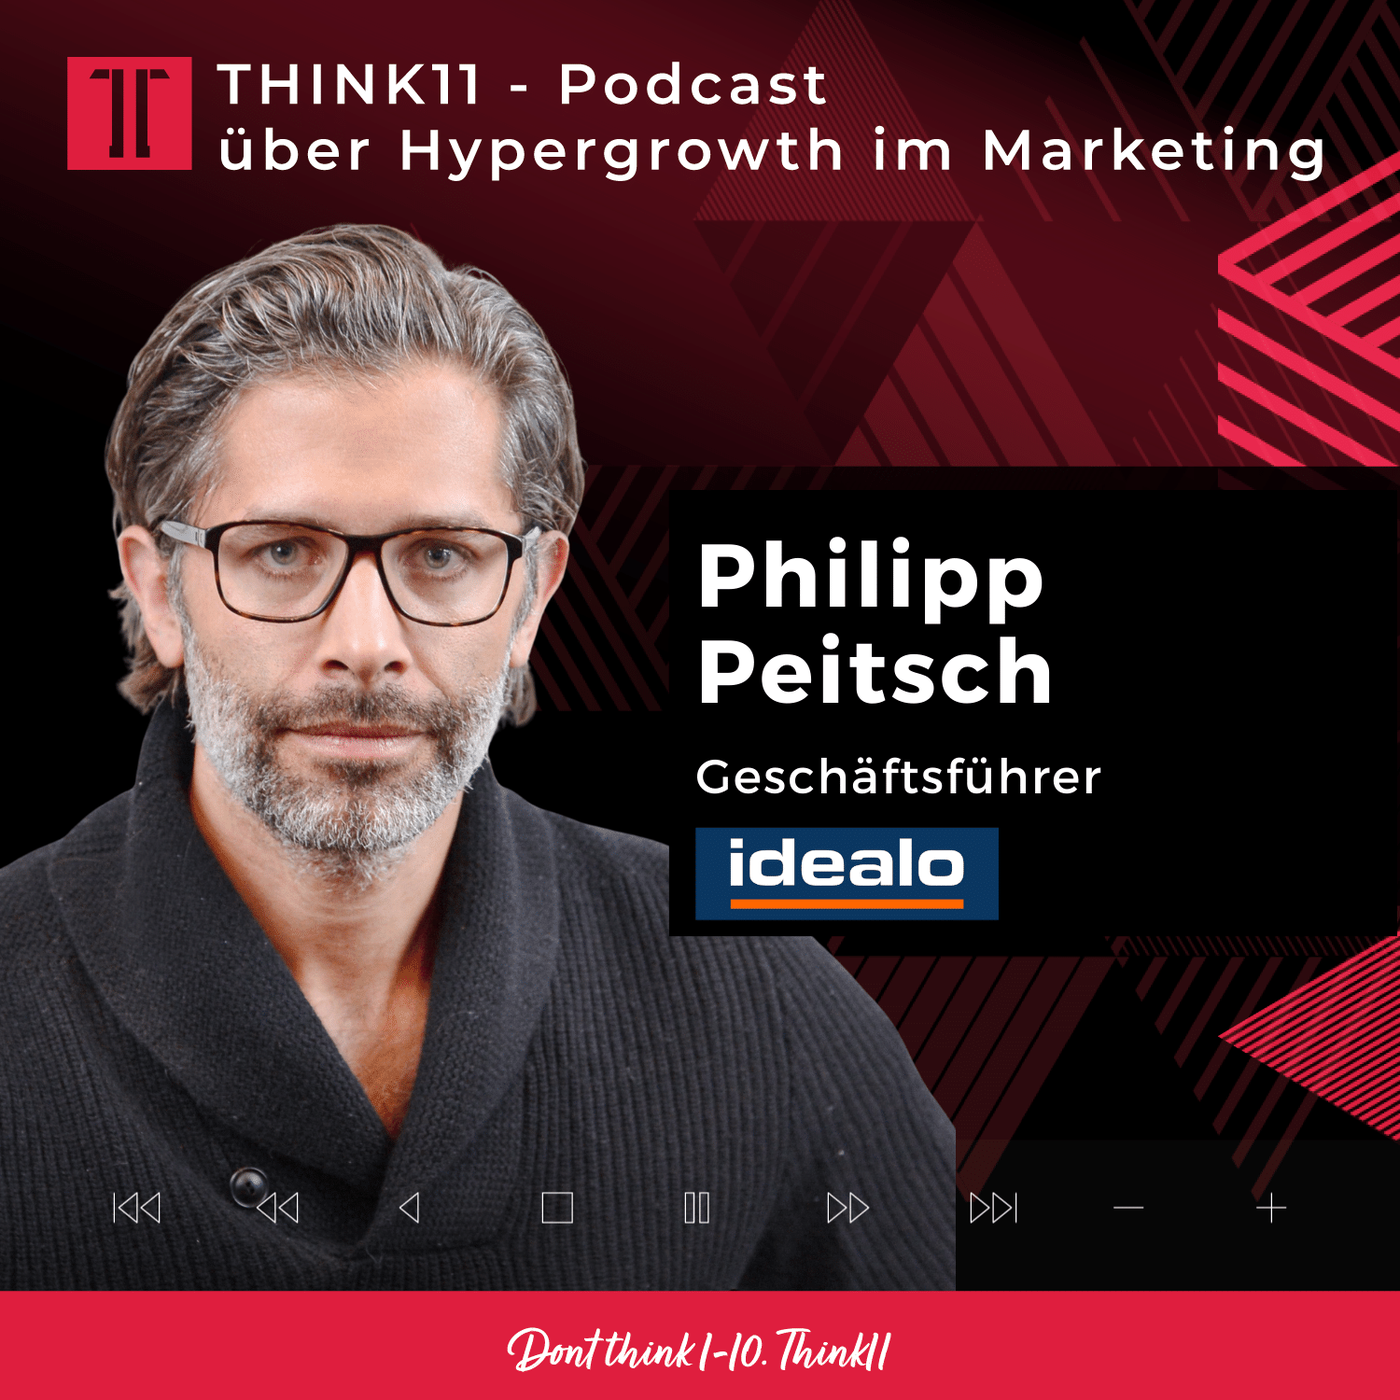 Think11-Talk mit Philipp Peitsch - CEO, idealo Internet GmbH